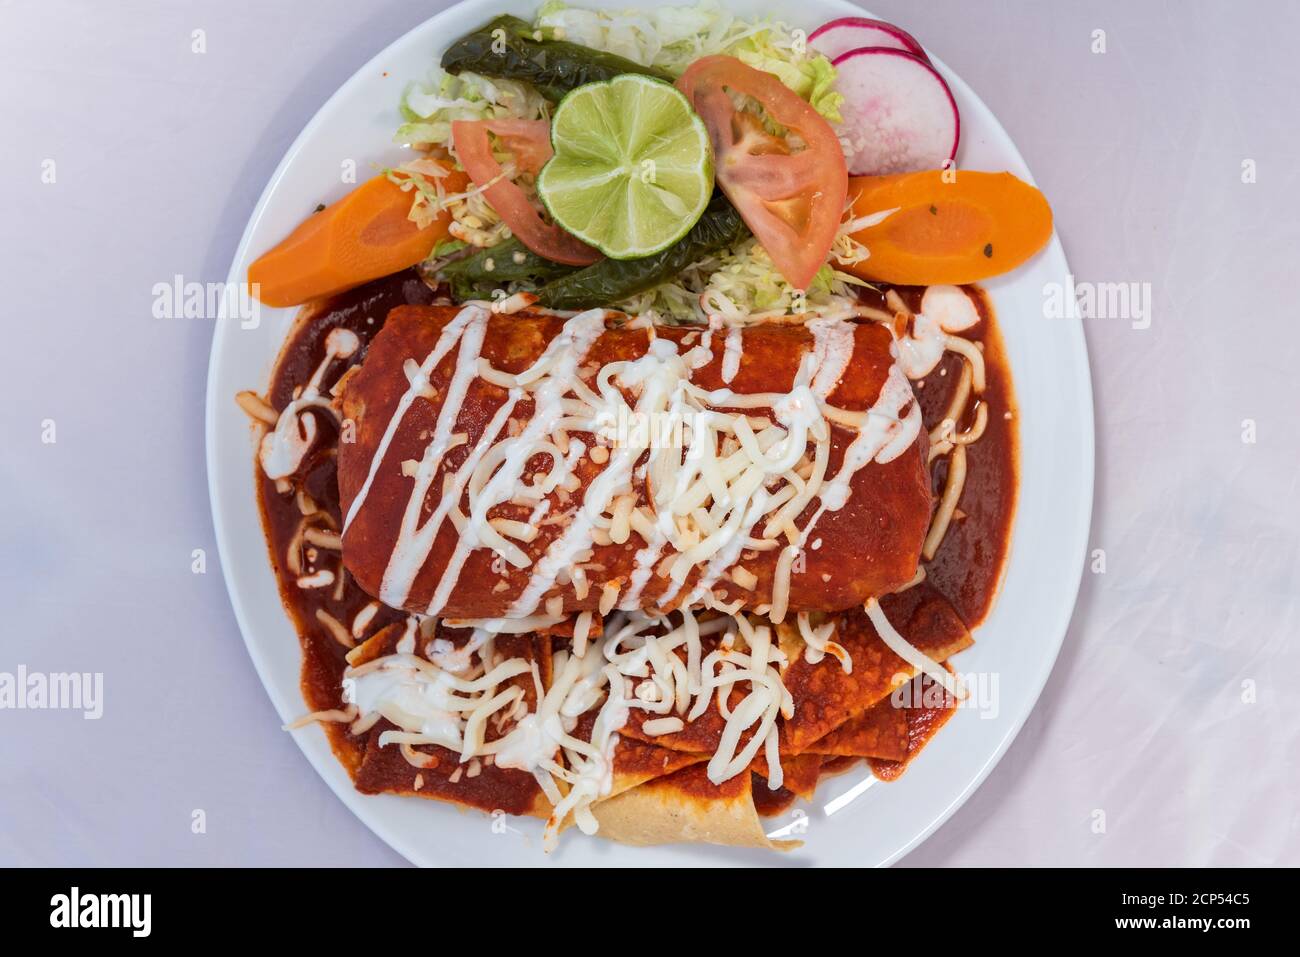 Vista dall'alto del burrito di ranchero umido con riso e fagioli serviti su un piatto caldo per alcuni deliziosi piatti messicani. Foto Stock